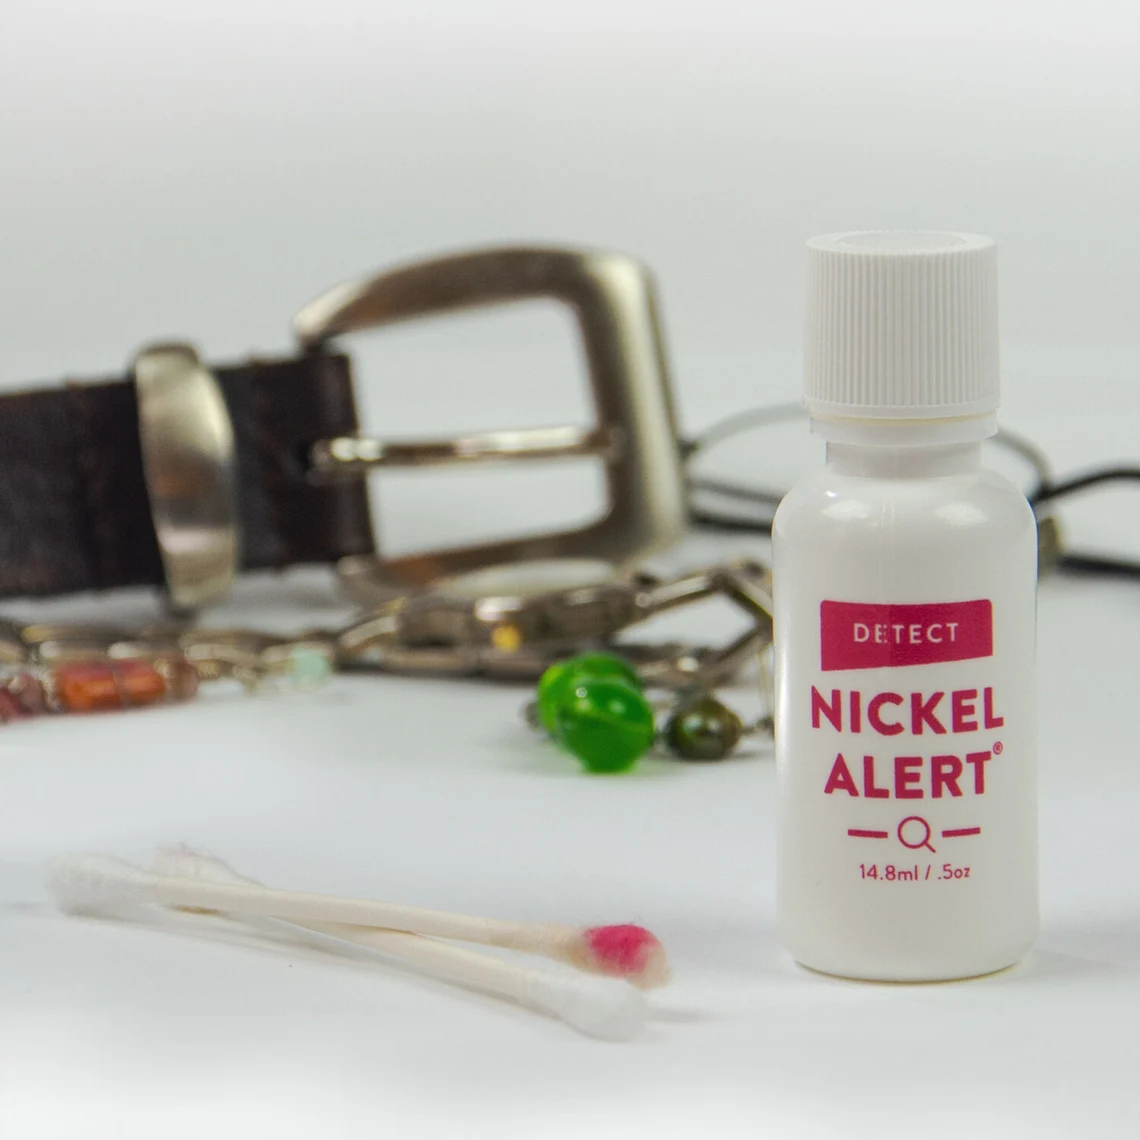 Nickel test kit